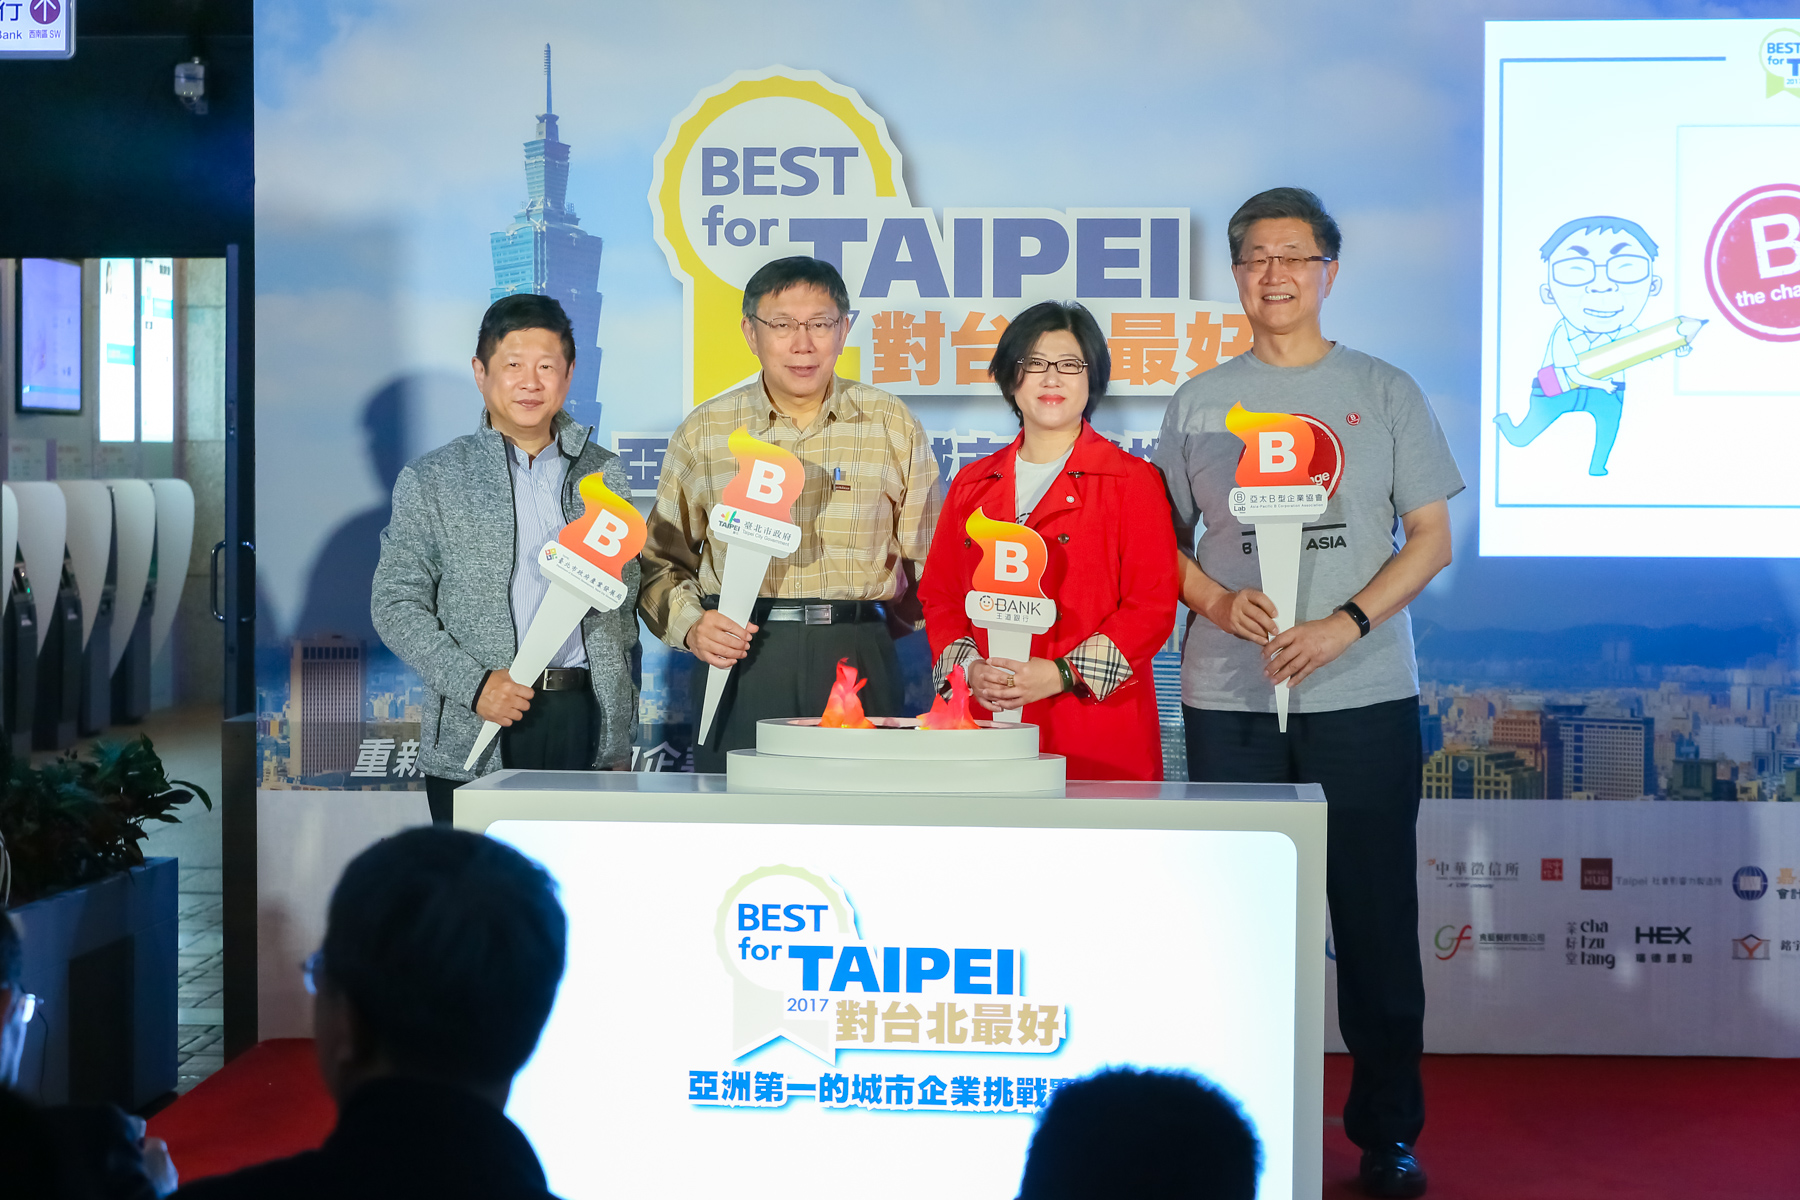 左起林局長、柯市長、駱副董、張理事長為Best for Taipei活動點燃起跑聖火.jpg